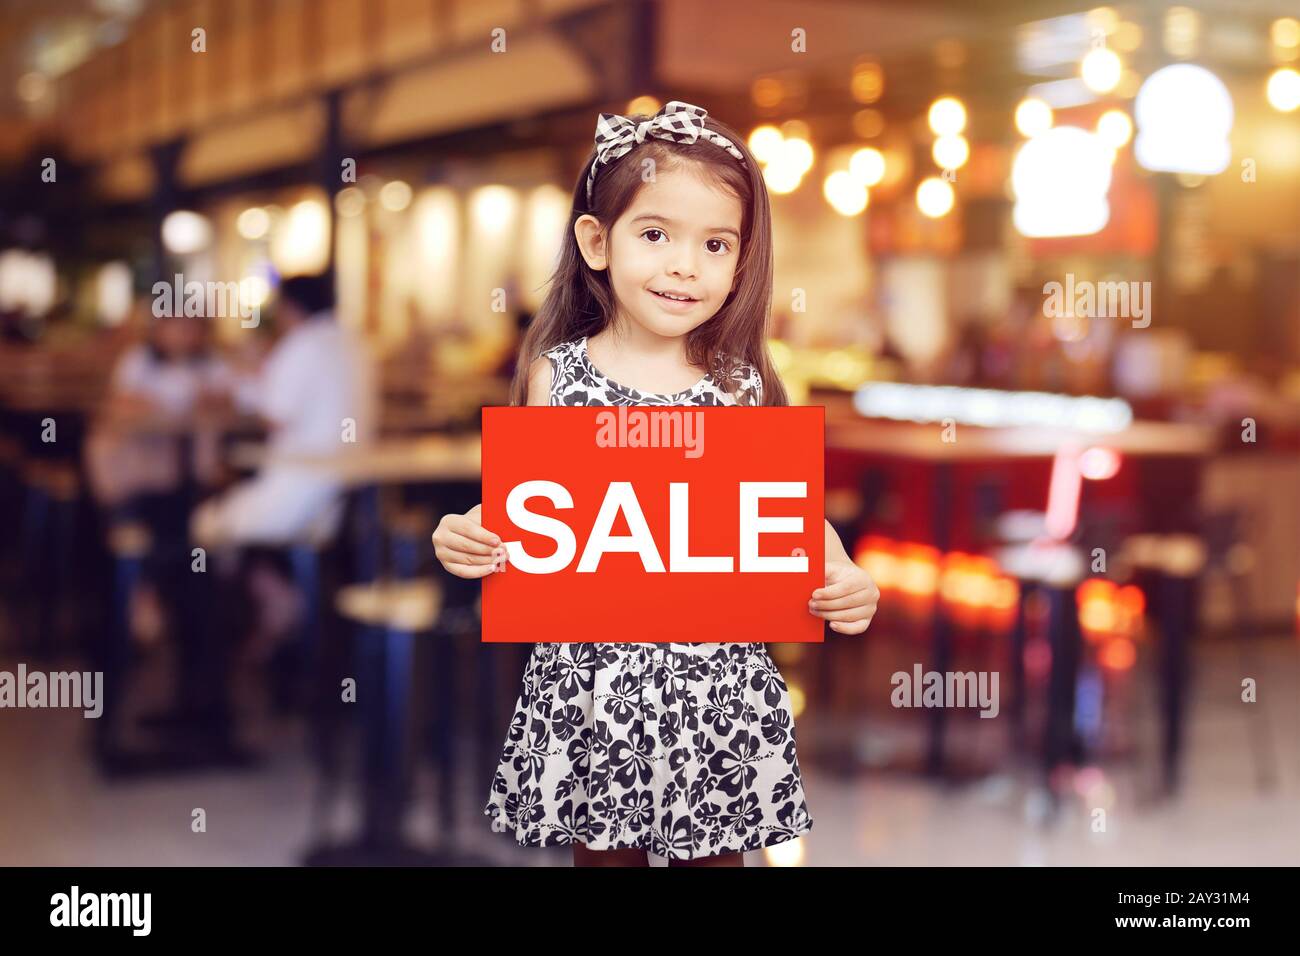 Sale Rabattaktion für Shop-Konzept: Adorable Mädchen mit rotem Schild mit Textverkauf in weißer Farbe vor dem Geschäft, Restaurant oder Café Stockfoto